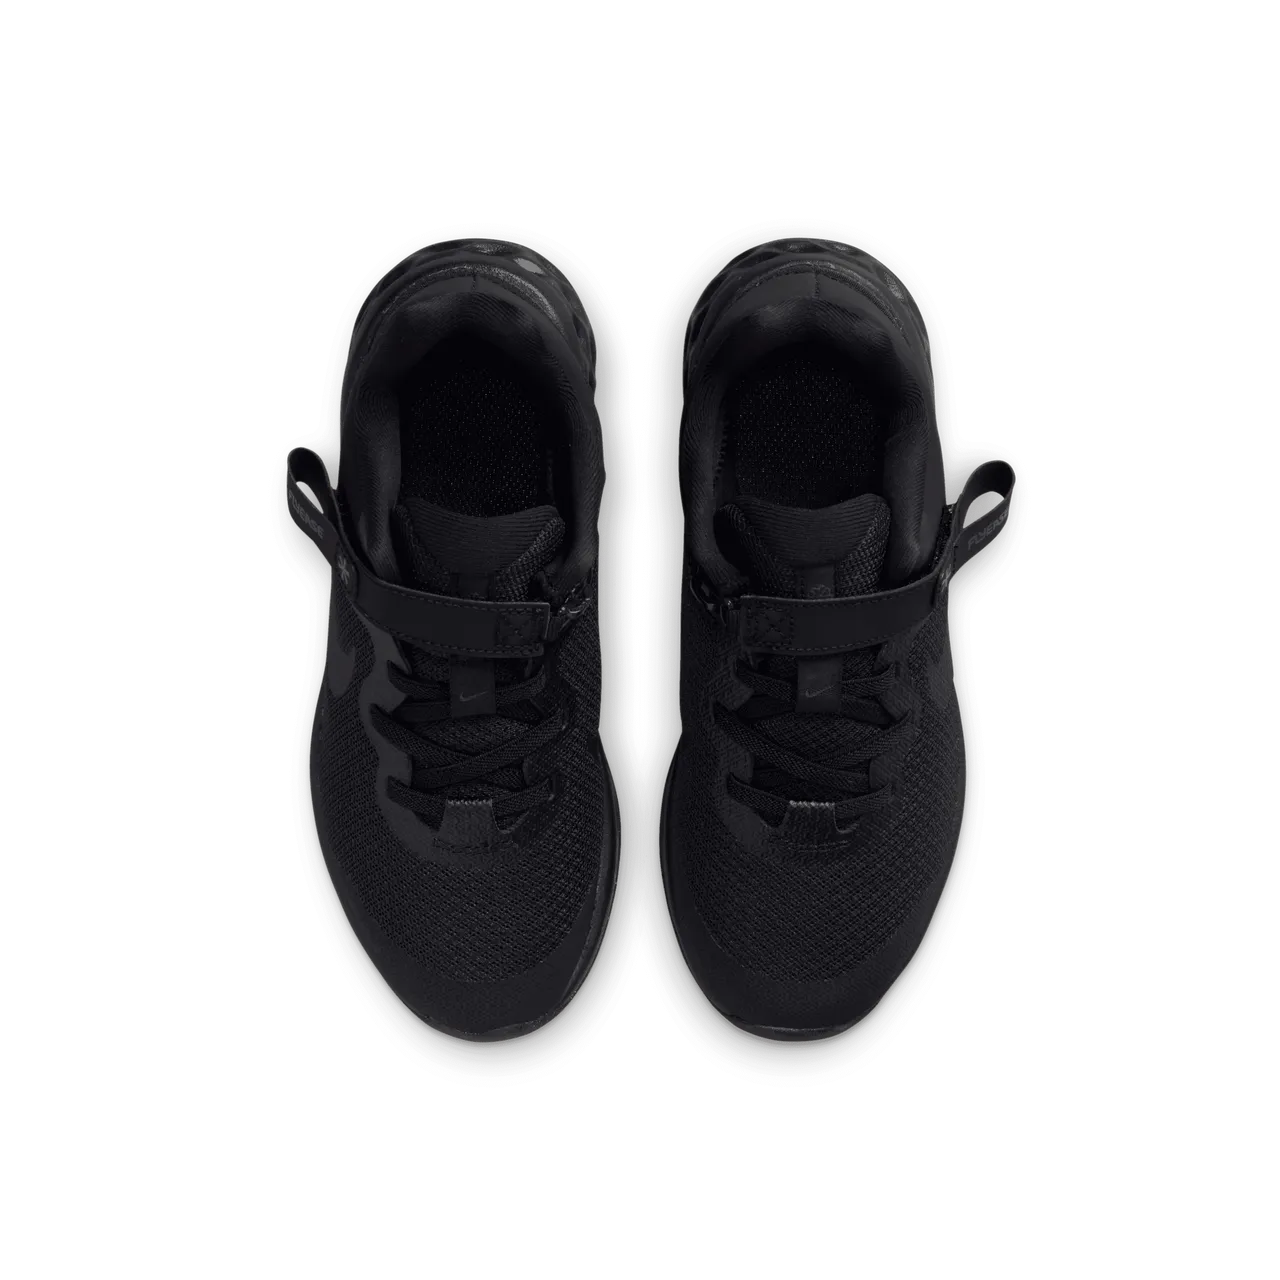 Nike Revolution 6 FlyEase Schuhe für einfaches Anziehen/Ausziehen für jüngere Kinder - Schwarz